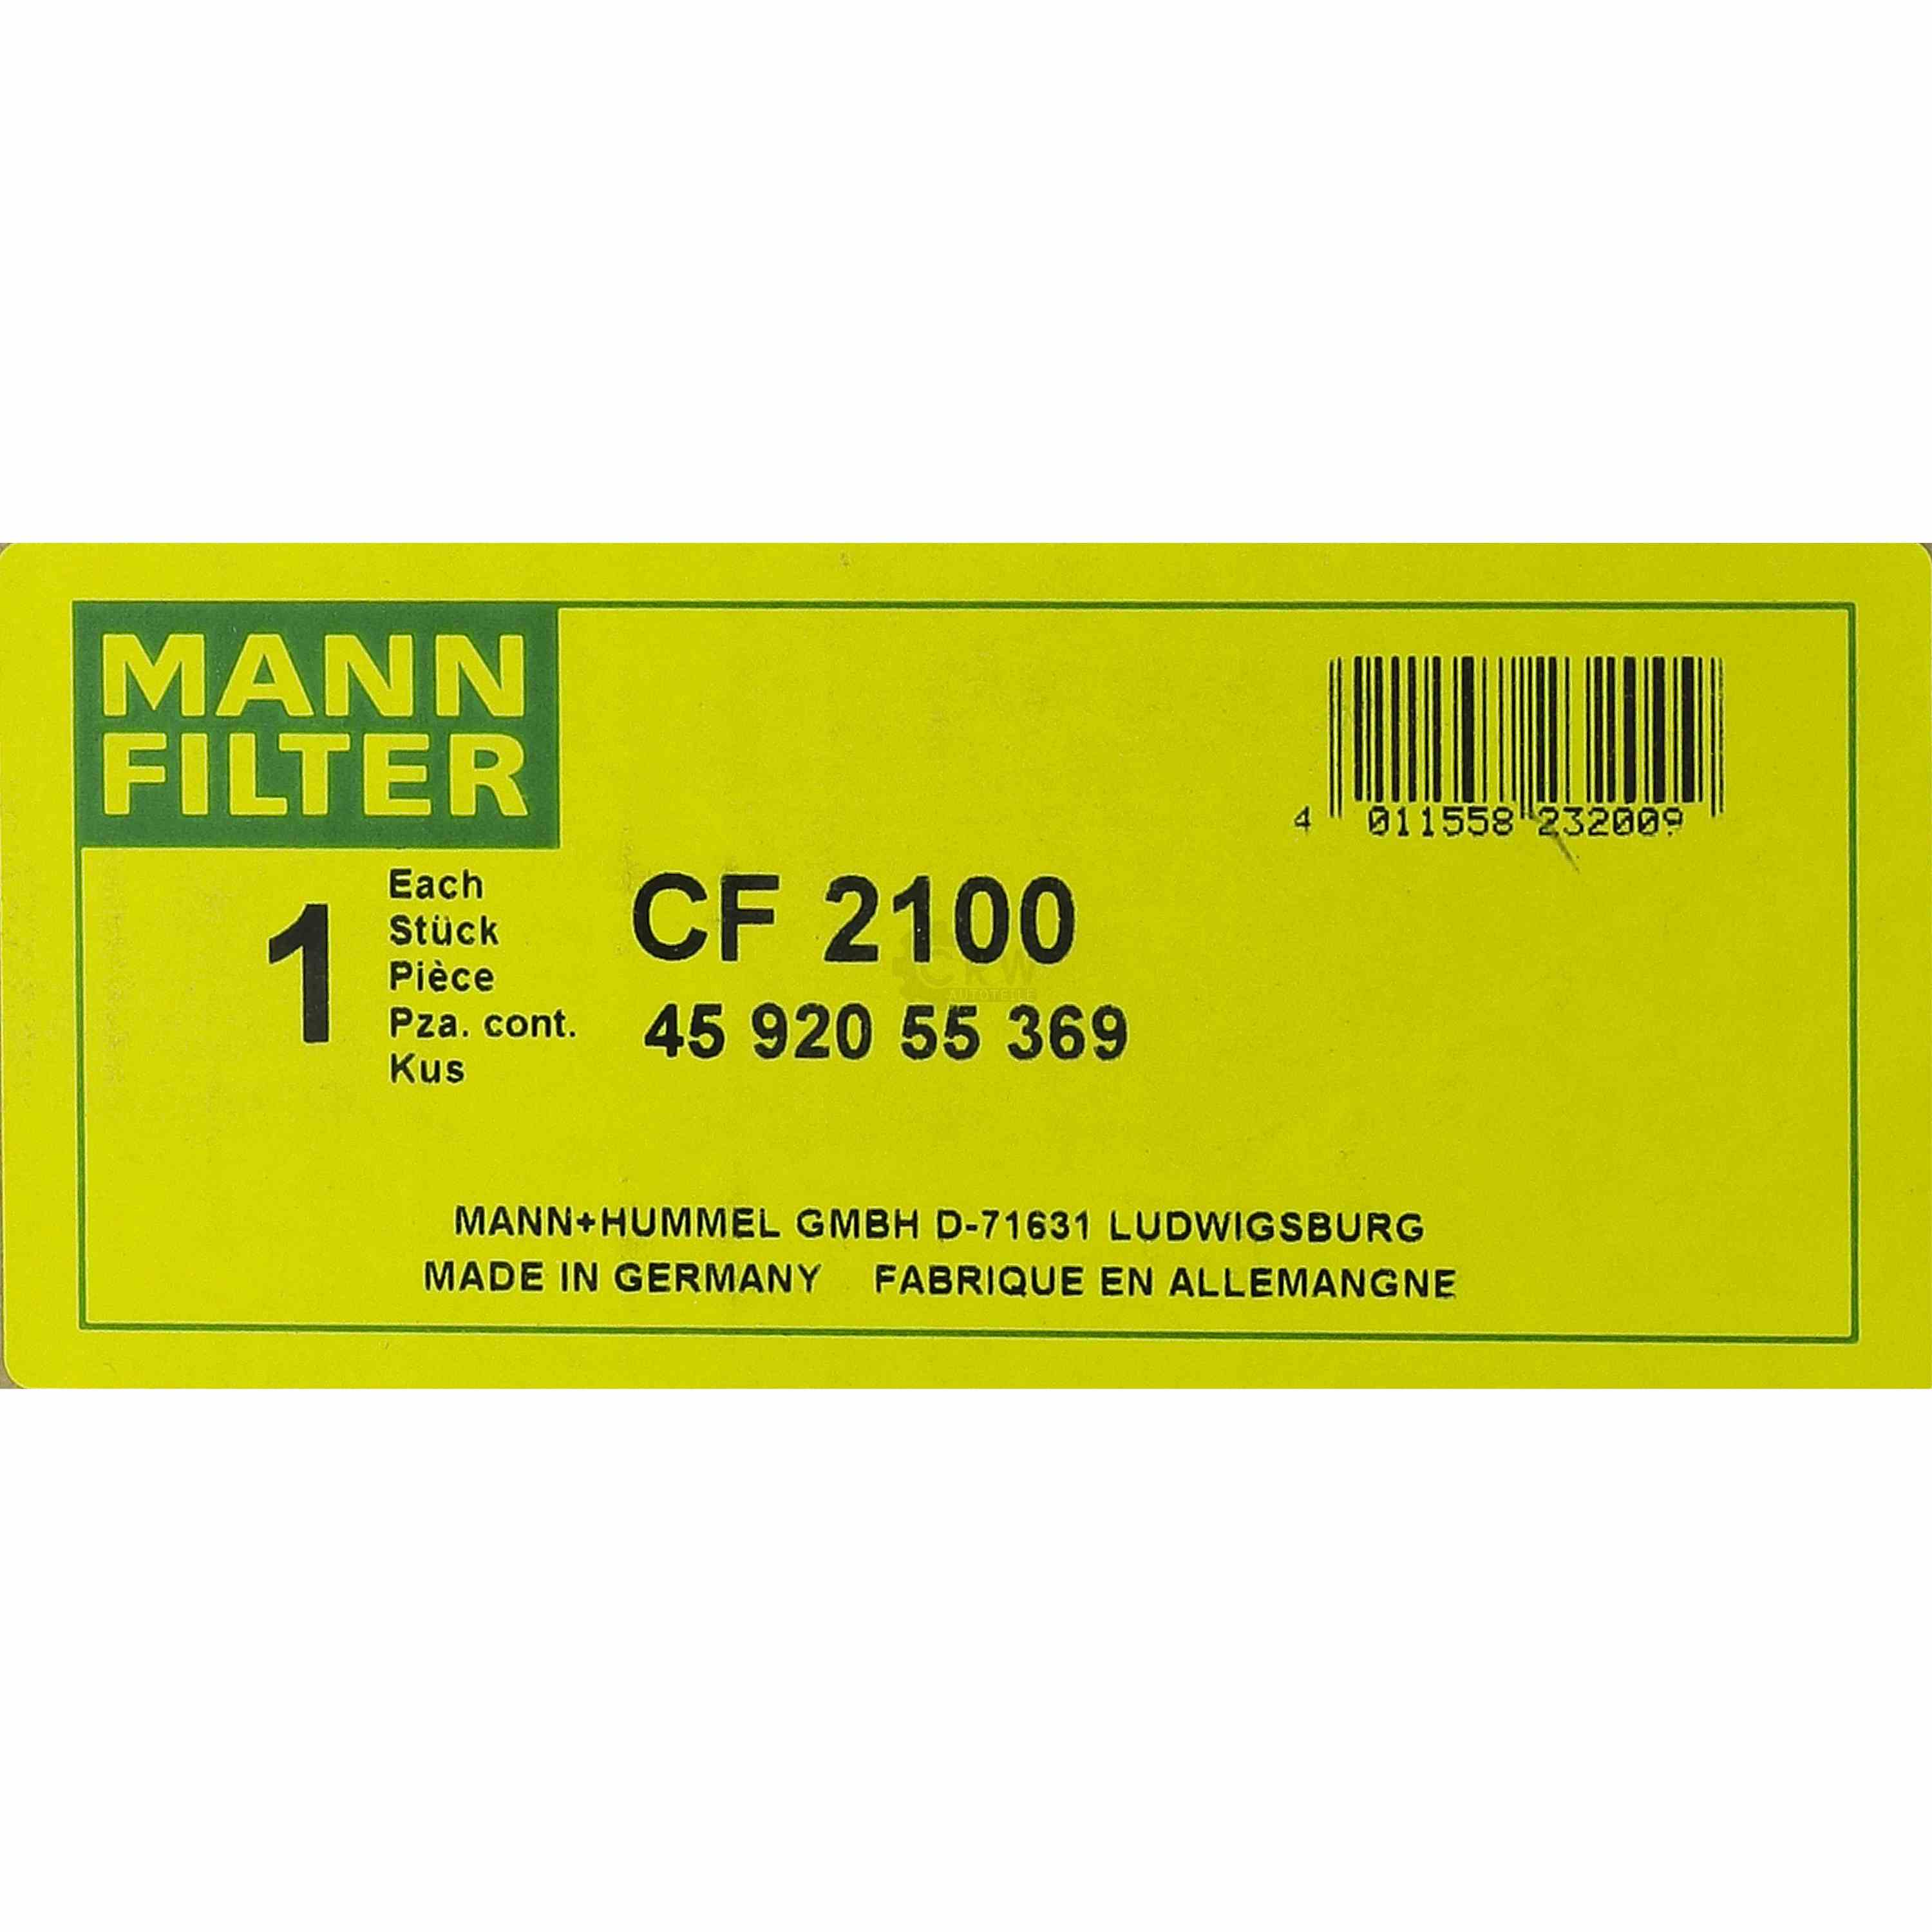 MANN FILTER Luftfilter Air Filter CF 2100